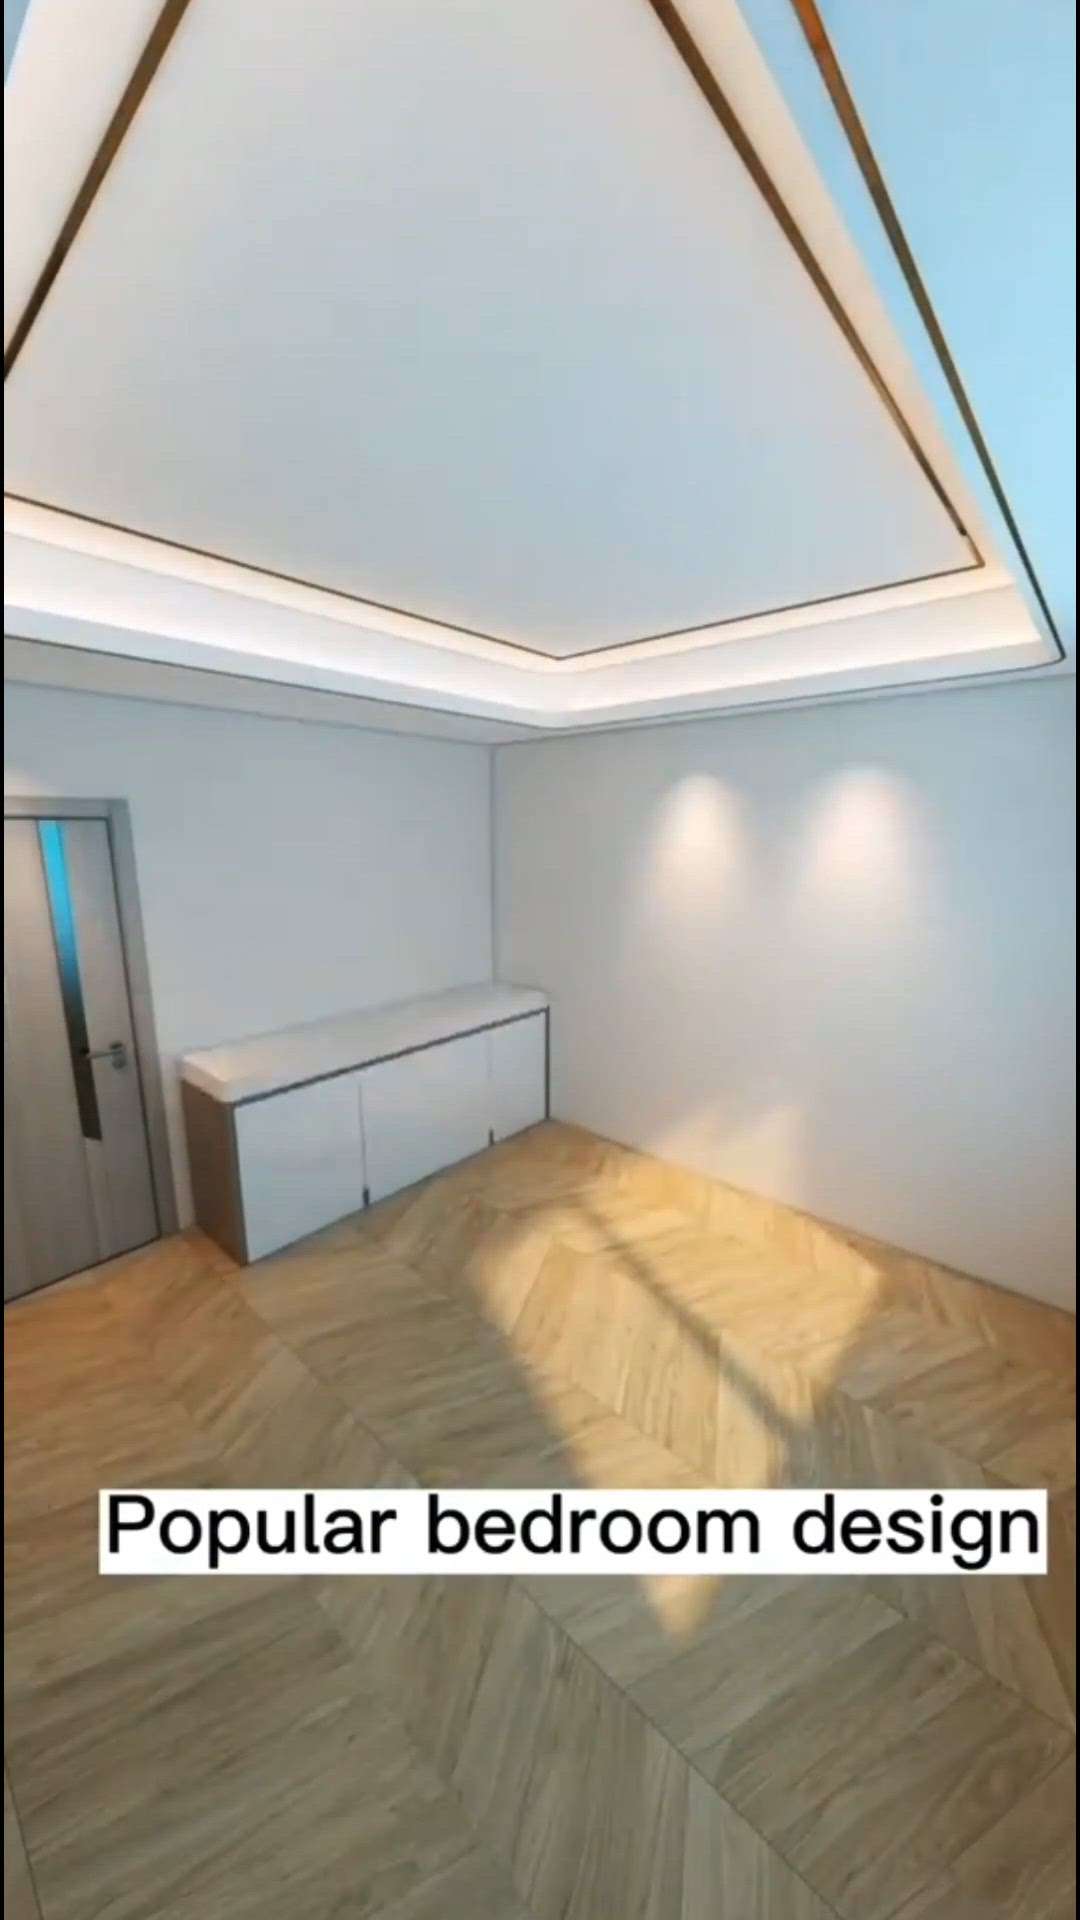 Popular Bedroom Design 😍🏠
-
𝐂𝐚𝐥𝐥 𝐎𝐑 𝐖𝐡𝐚𝐭𝐬𝐚𝐩𝐩 : +91-9711896941 /9871963542
𝐋𝐚𝐧𝐝𝐥𝐢𝐧𝐞 : 0129-4043190
𝐌𝐚𝐢𝐥 : sjinteriosphere@gmail.com
------------------------
🅾🆄🆁 🆁🅰🅽🅶🅴 🅾🅵 🆂🅴🆁🆅🅸🅲🅴🆂 :
✅ 𝐂𝐨𝐧𝐬𝐭𝐫𝐮𝐜𝐭𝐢𝐨𝐧
✅ 𝐈𝐧𝐭𝐞𝐫𝐢𝐨𝐫 𝐃𝐞𝐬𝐢𝐠𝐧𝐢𝐧𝐠
✅ 𝐈𝐧𝐭𝐞𝐫𝐢𝐨𝐫 𝐃𝐞𝐬𝐢𝐠𝐧𝐢𝐧𝐠 𝐜𝐨𝐧𝐬𝐮𝐥𝐭𝐚𝐧𝐜𝐲
✅ 𝐂𝐨𝐧𝐬𝐭𝐫𝐮𝐜𝐭𝐢𝐨𝐧 + 𝐈𝐧𝐭𝐞𝐫𝐢𝐨𝐫𝐬
.
.
#InteriorDesignInspiration | #DreamInteriors | #DesignGoals | #reels #reelkarofeelkaro #reelitfeelit